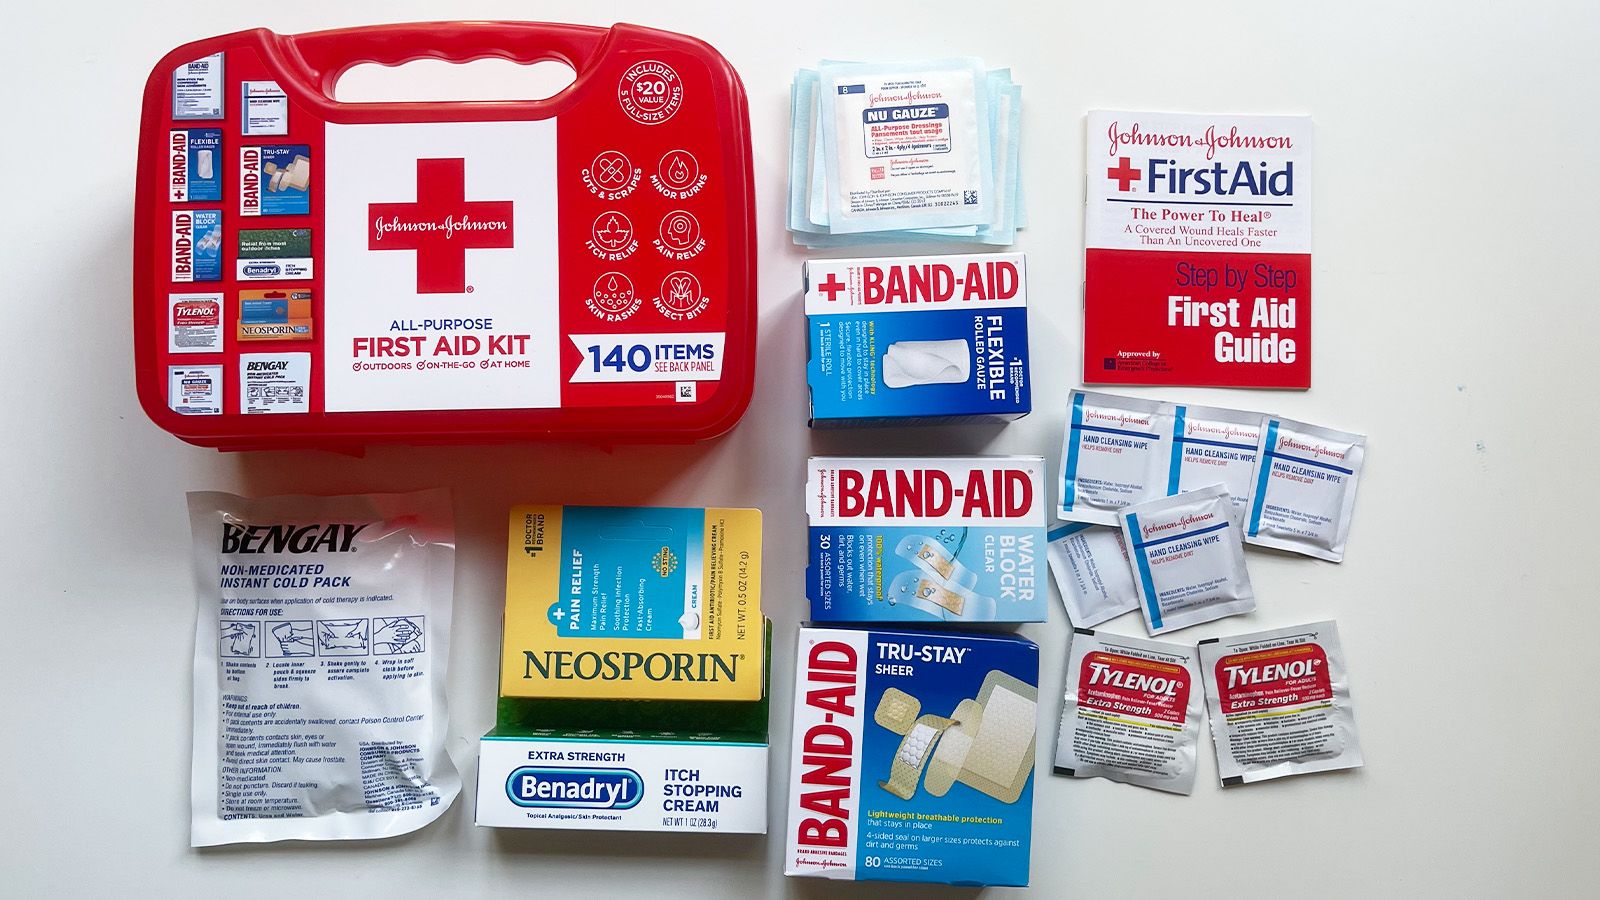 Johnson & Johnson First Aid To Go Portable Mini Travel Kit, 12 pieces